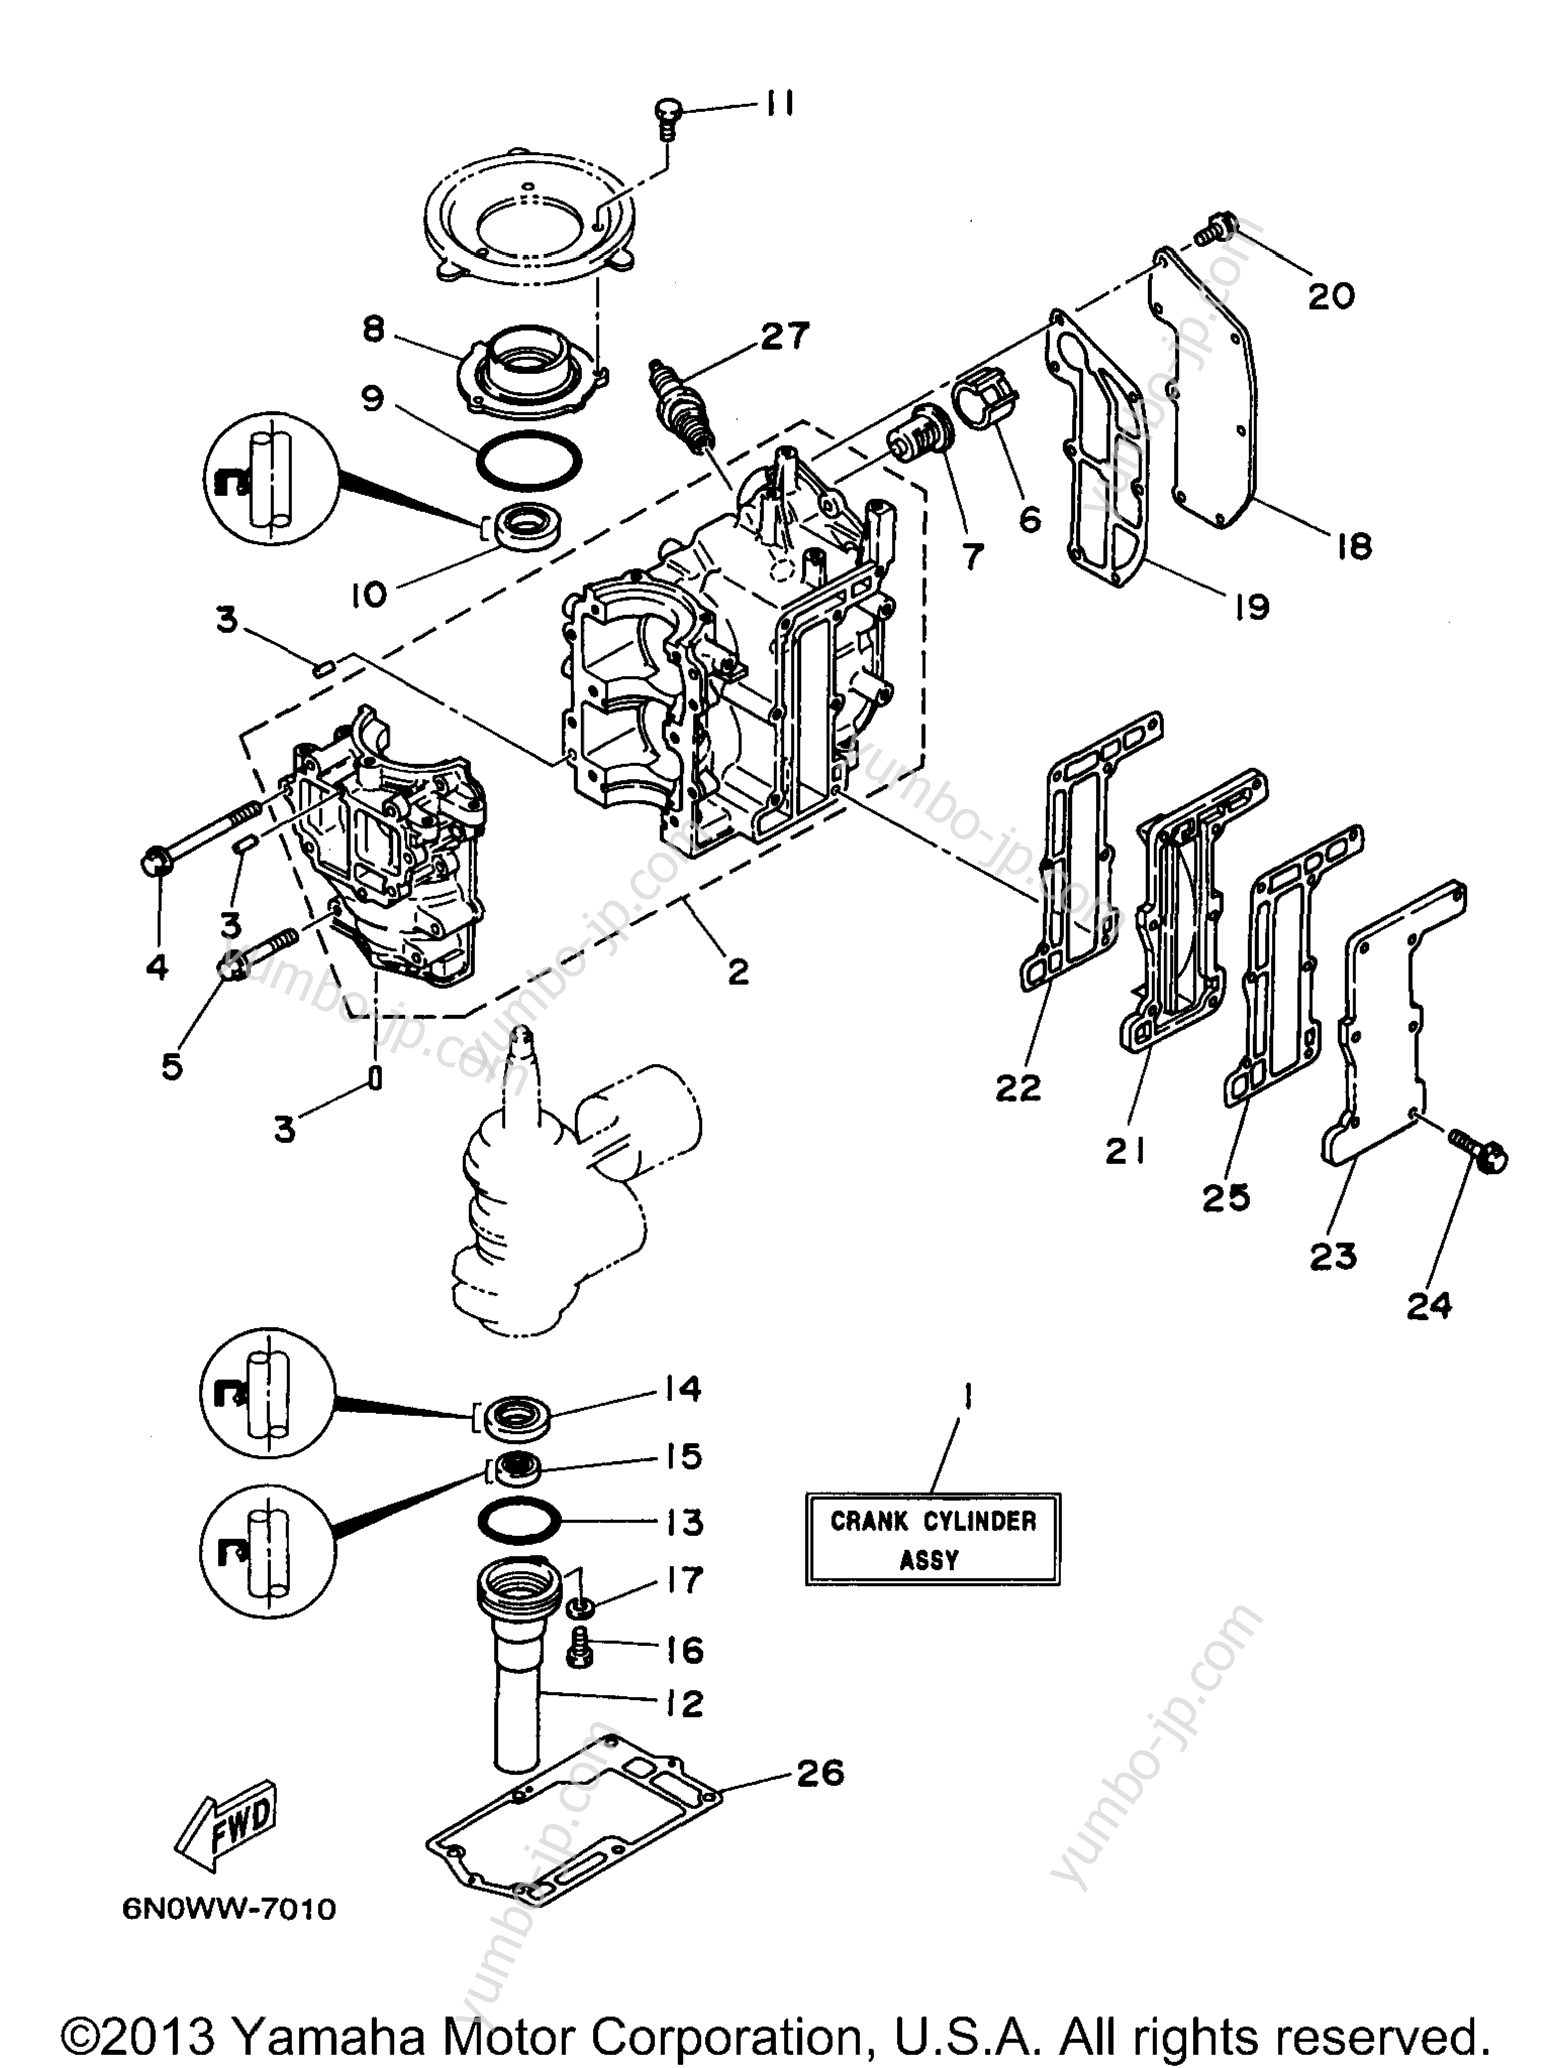 Cylinder Crankcase для лодочных моторов YAMAHA 8MLHV 1997 г.